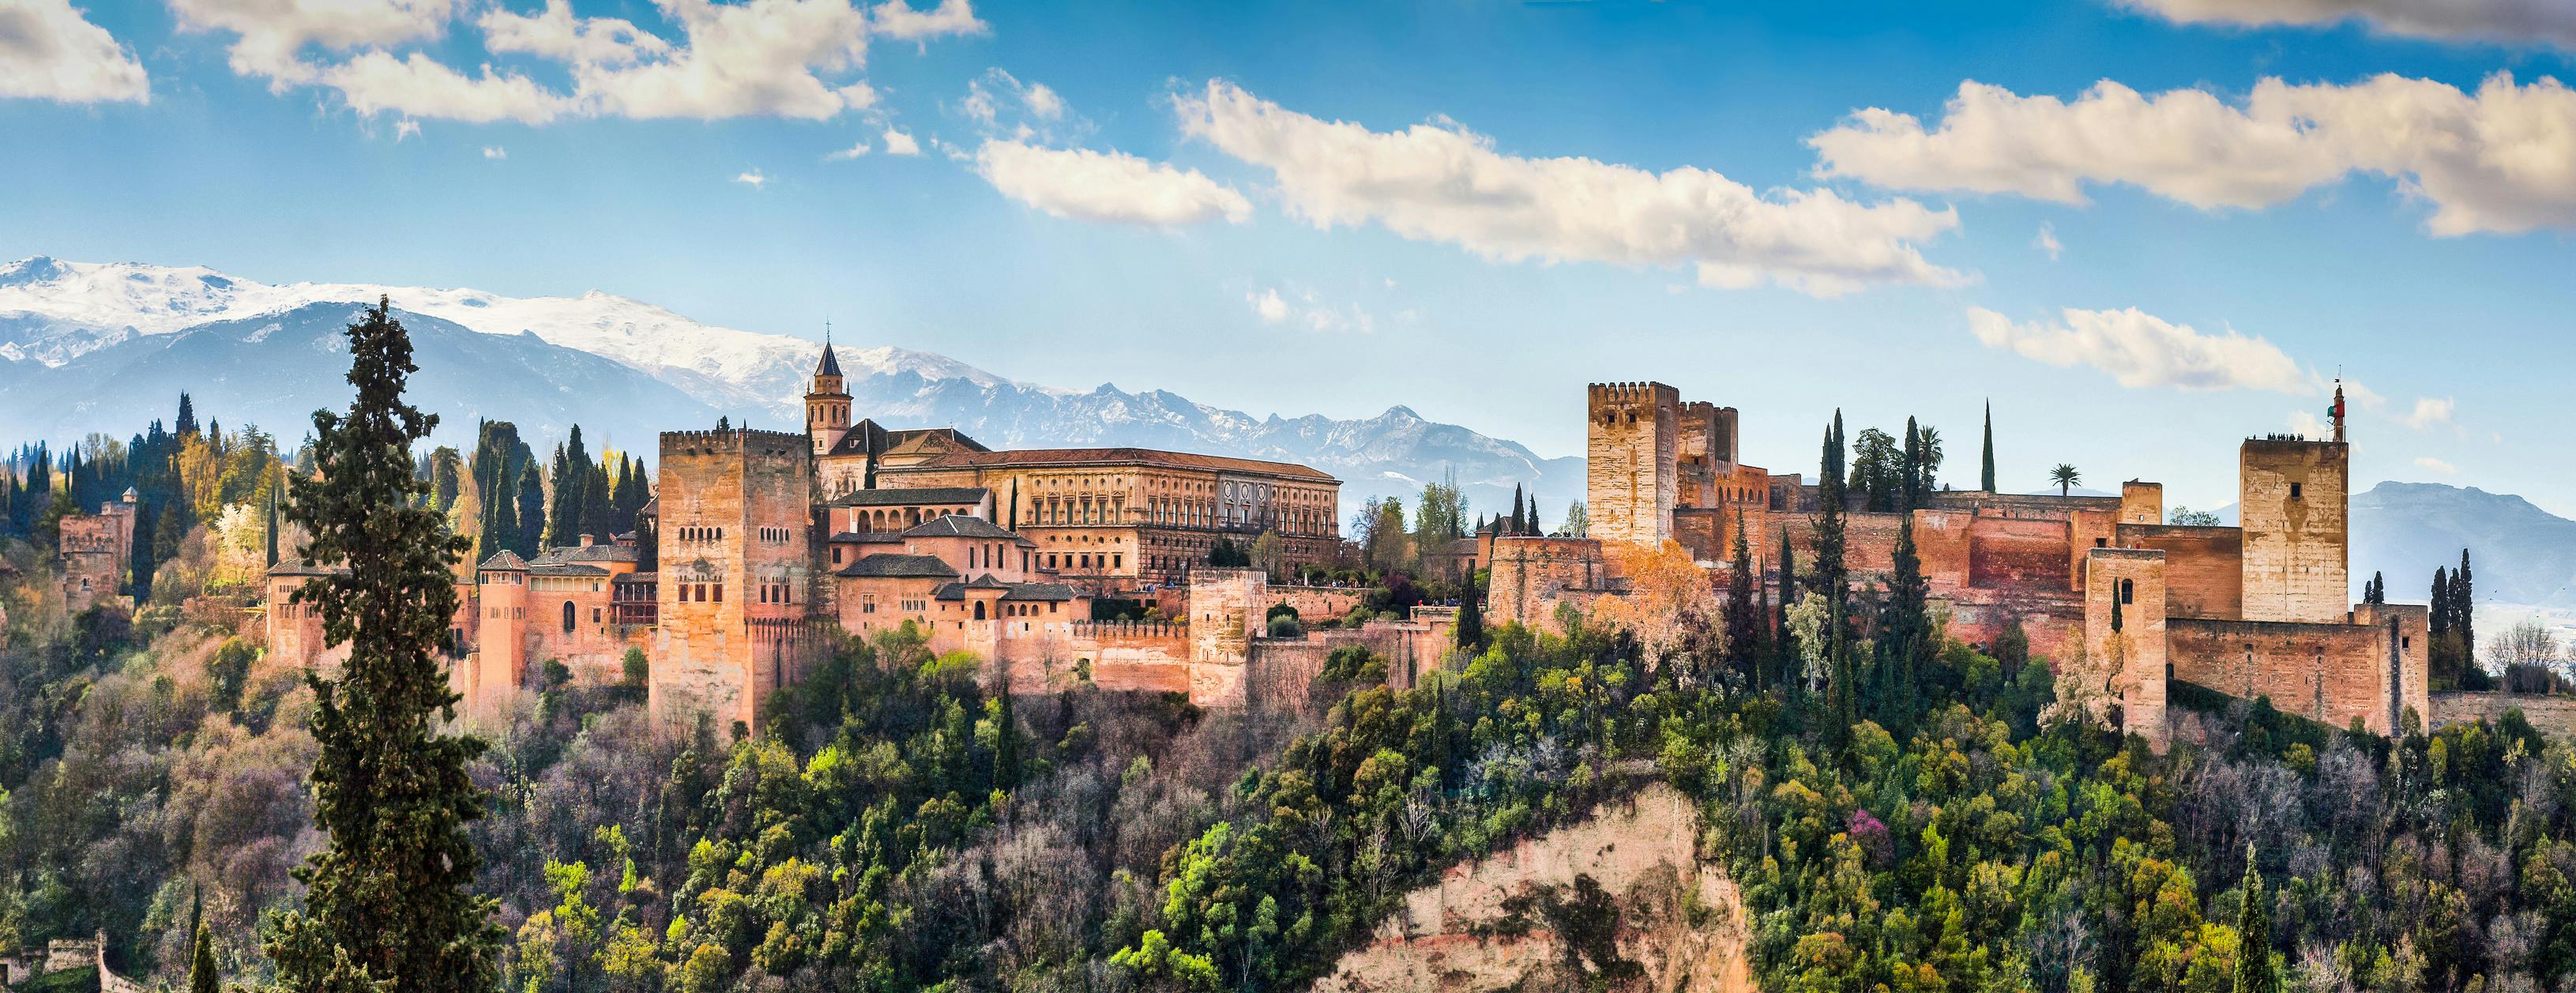 Visite virtuelle de l'Alhambra depuis chez vous